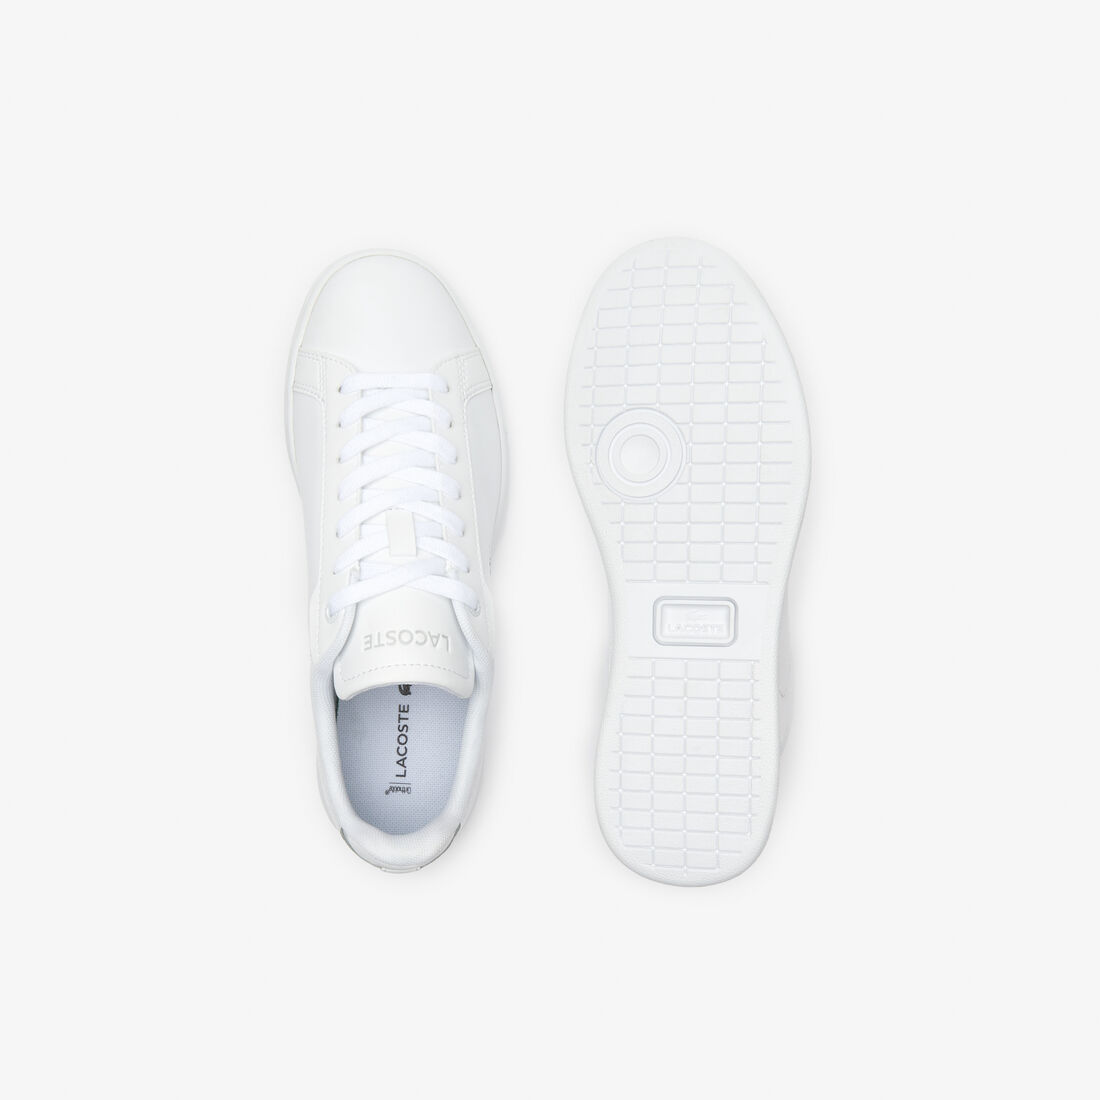 Lacoste Carnaby Pro Bl Tonal Leder Sneakers Damen Weiß | GYBE-15907